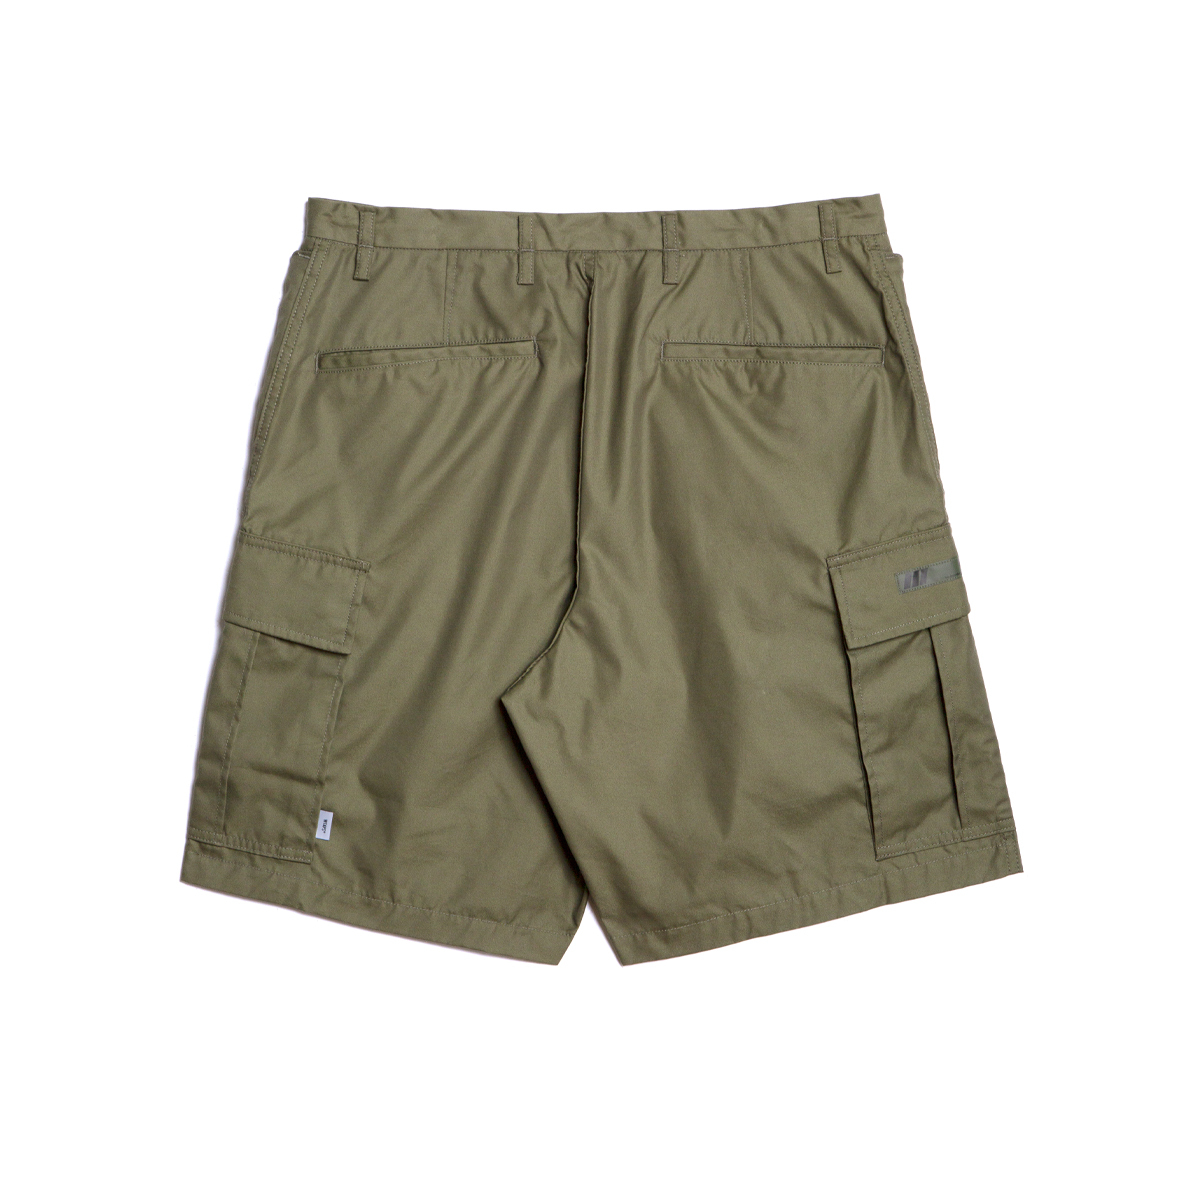 激安通販 WTAPS Trousers Mils0001 / / SHORTS Shorts / / / RIPSTOP Nyco. / Oxford  (2 MILS0001 M WTAPS パンツ